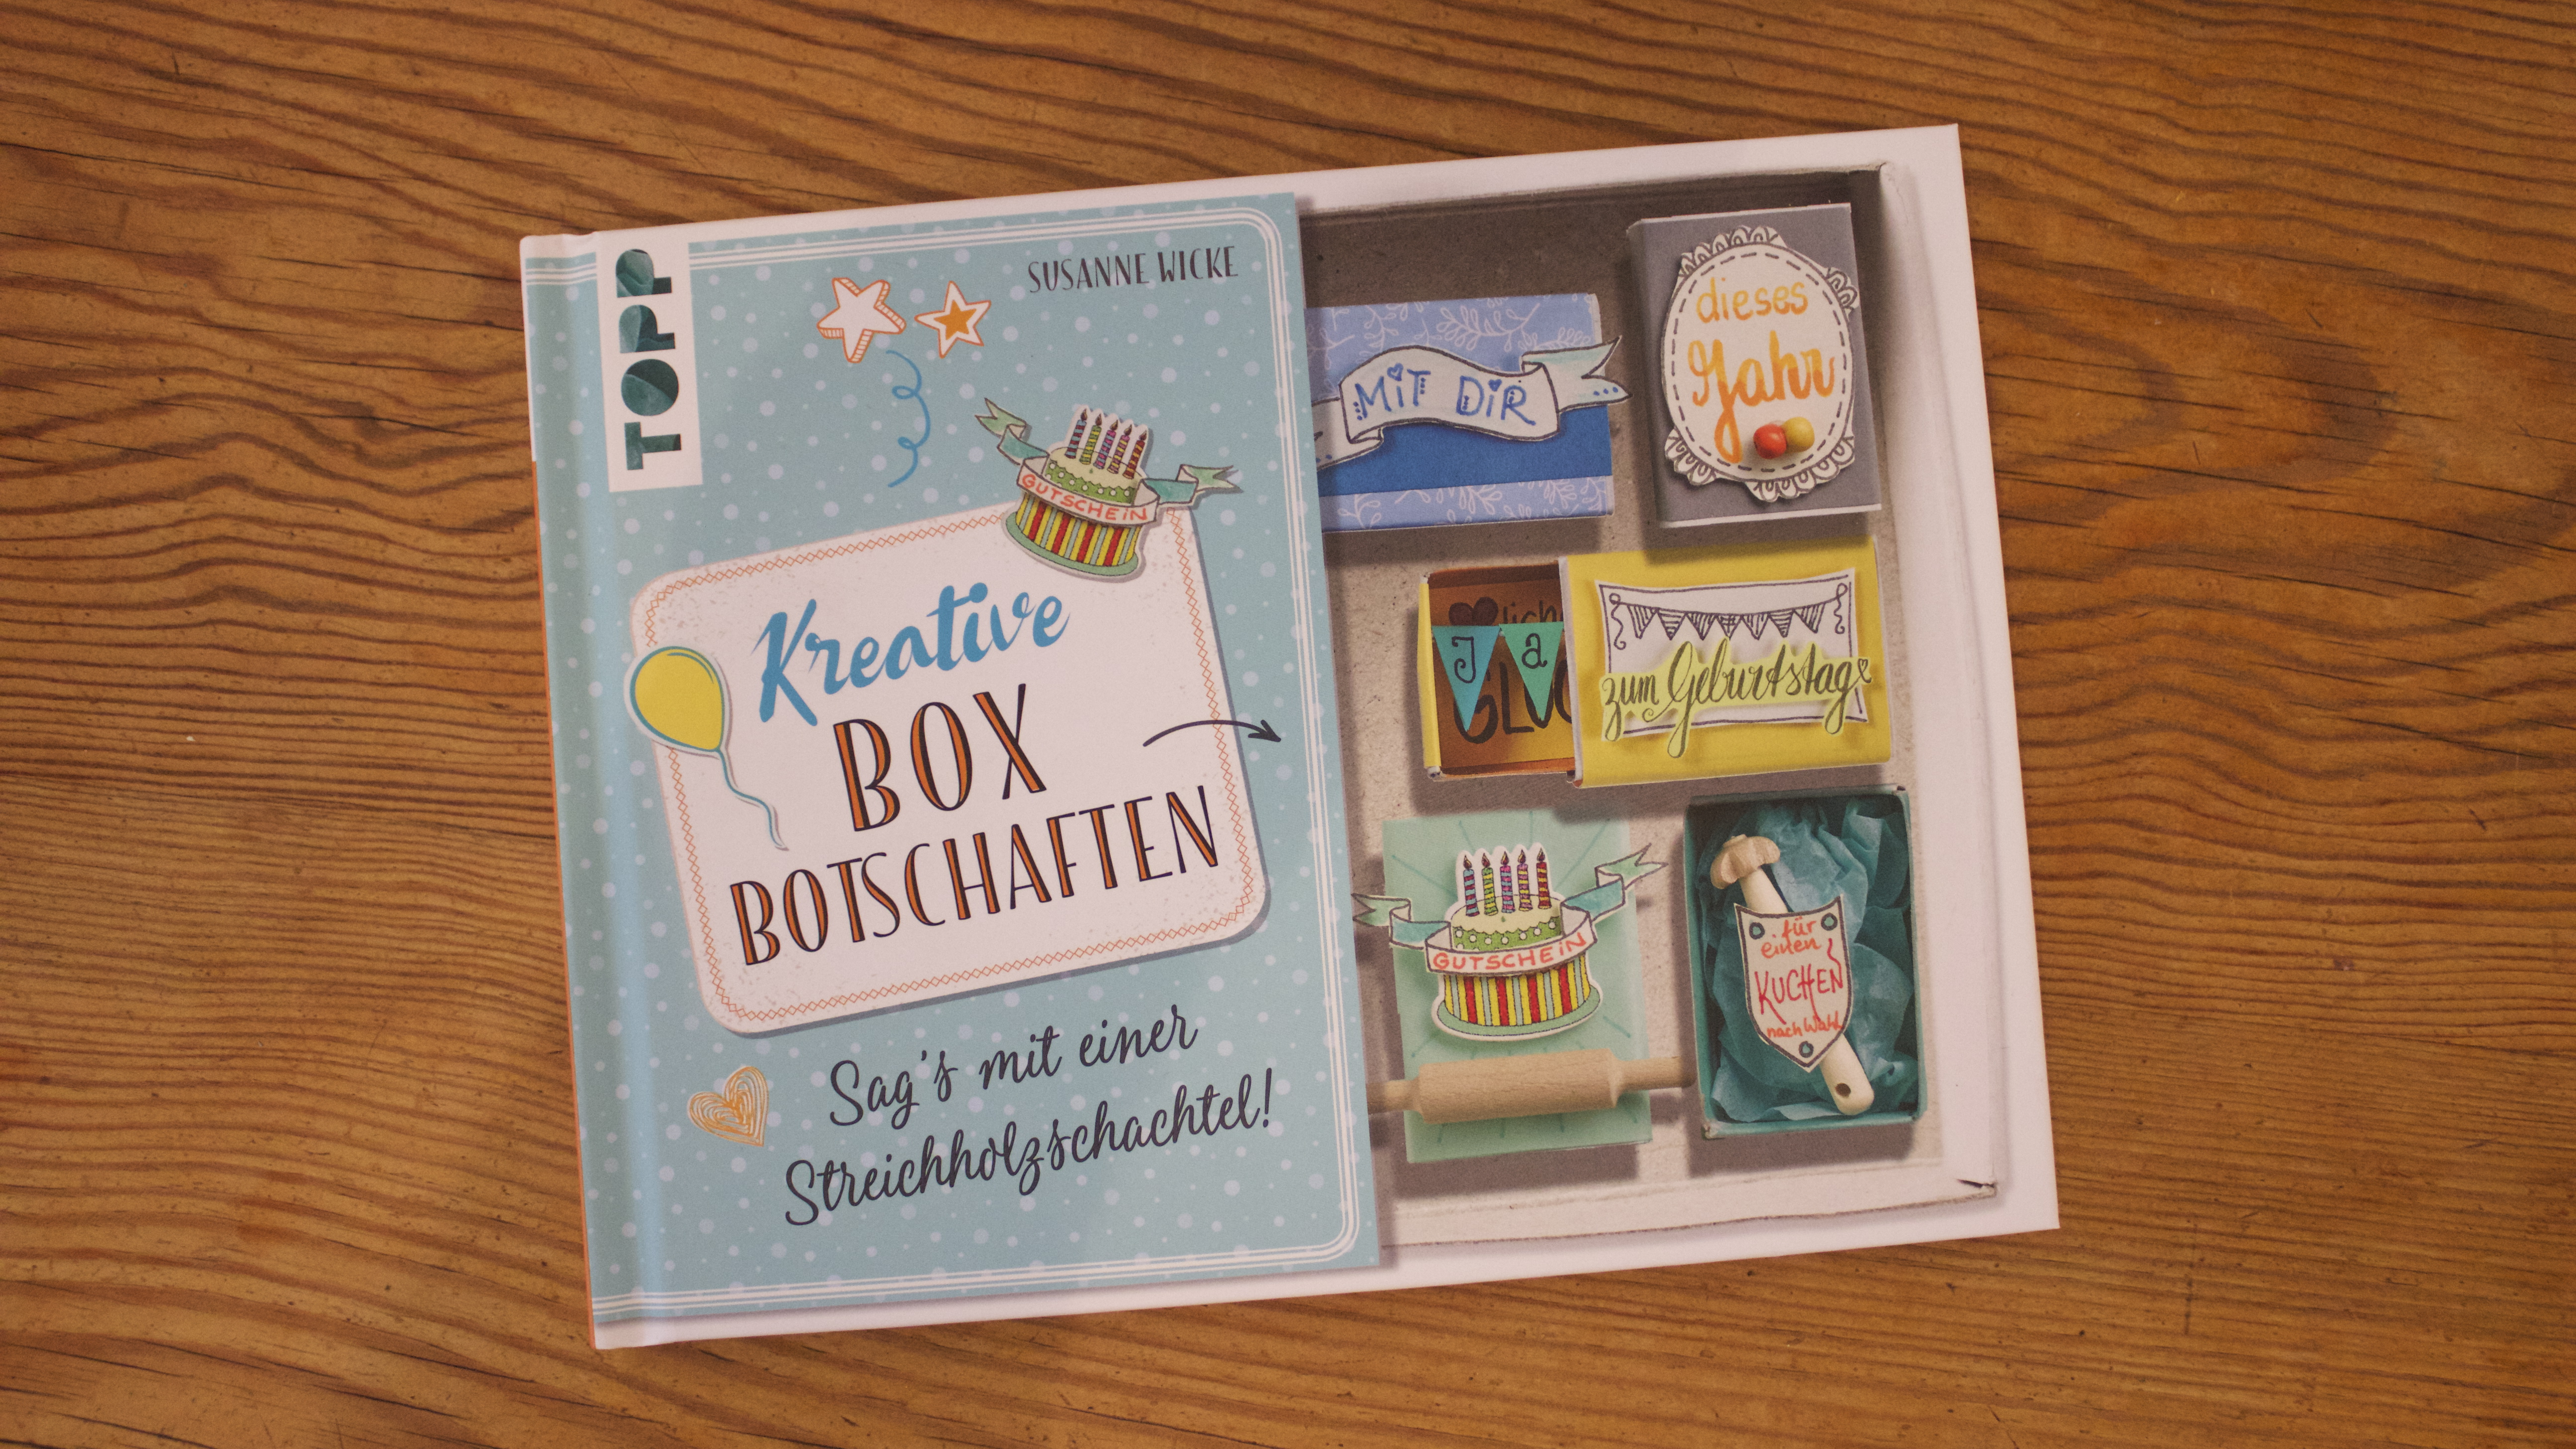 Sara Naumann Matchbox inspired by Kreative Box Botschaften